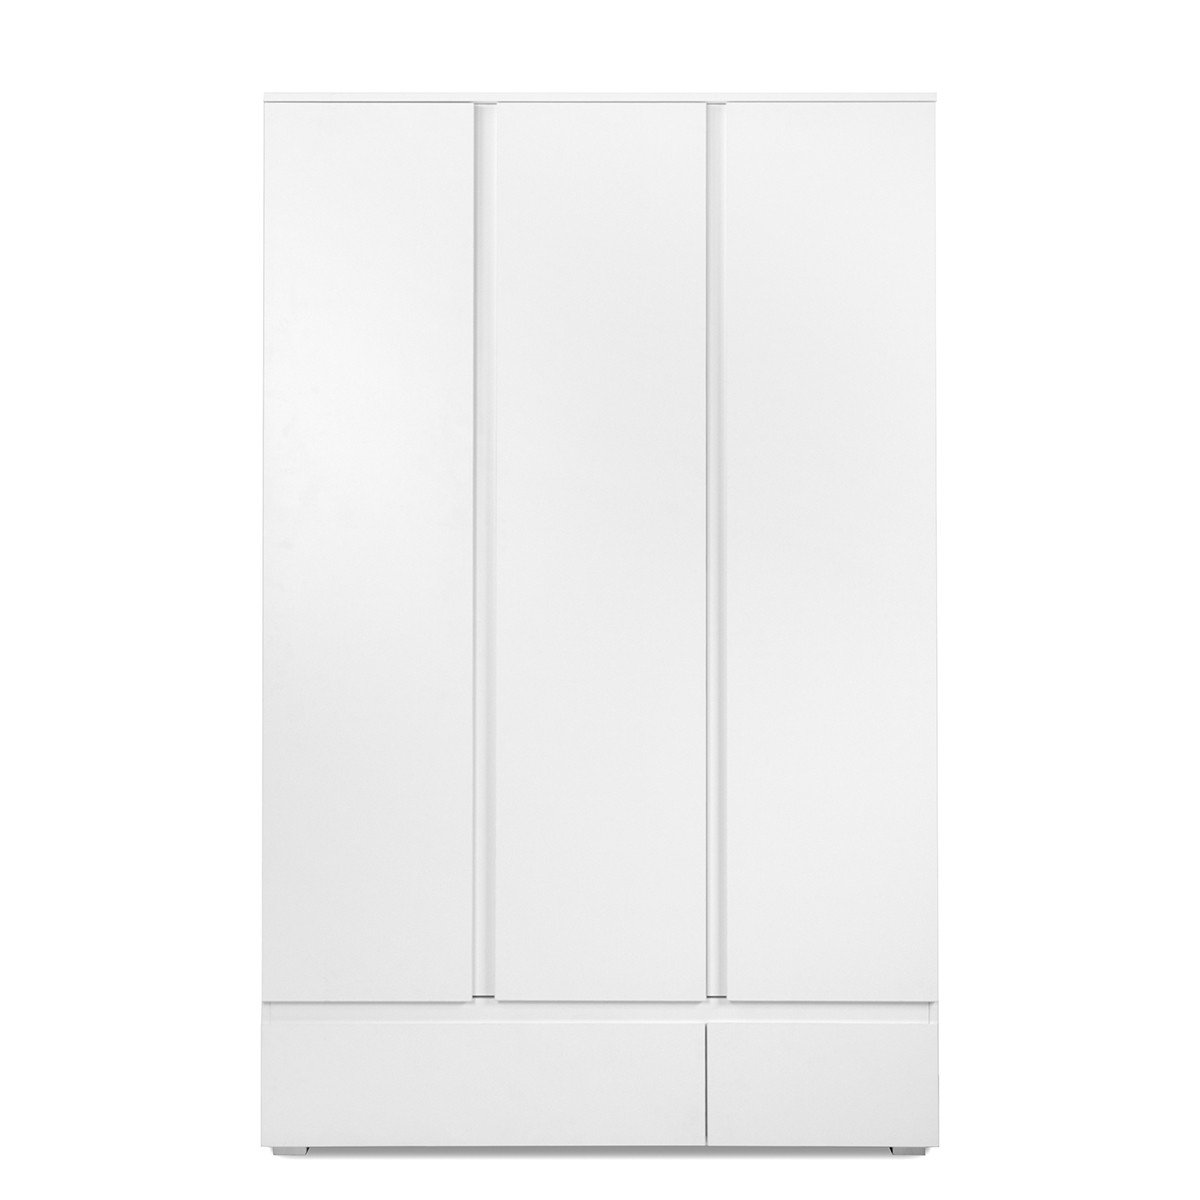 Bureau 140x55,5 cm avec une porte et deux tiroirs blanc mat série Helsinki  Blanc